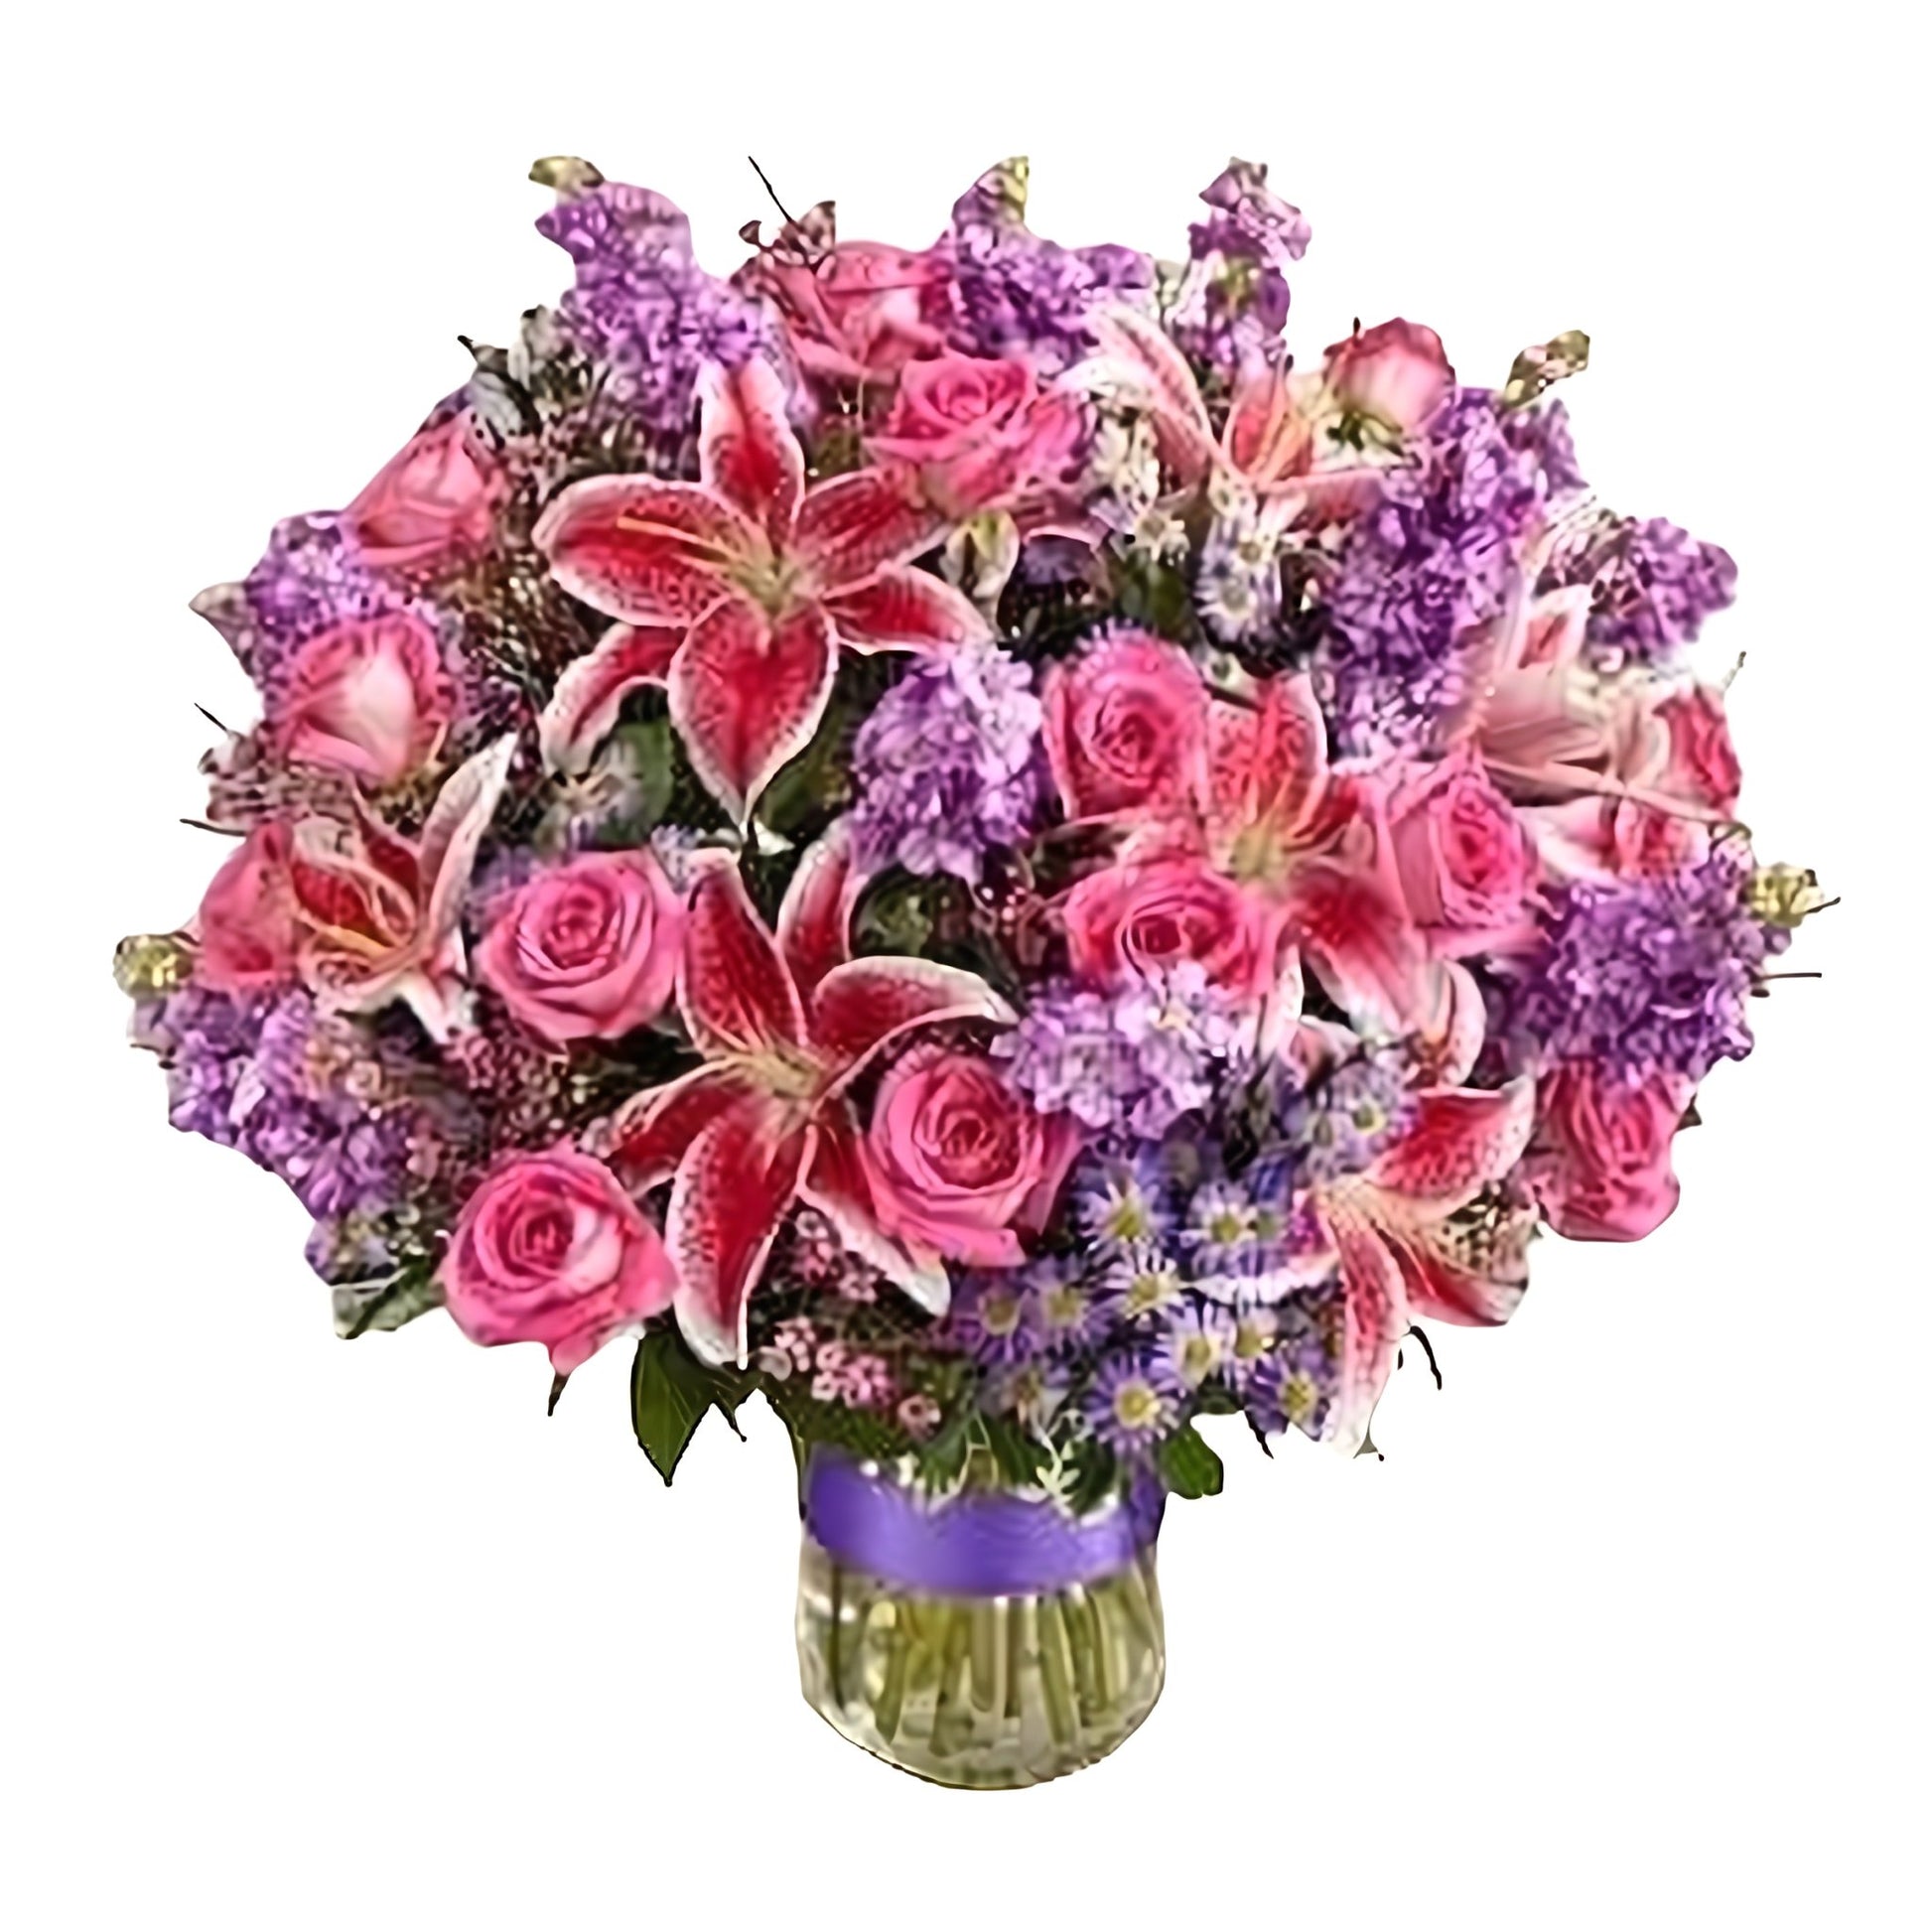 Forever Loving You - Floral Arrangement - Flower Delivery Brooklyn